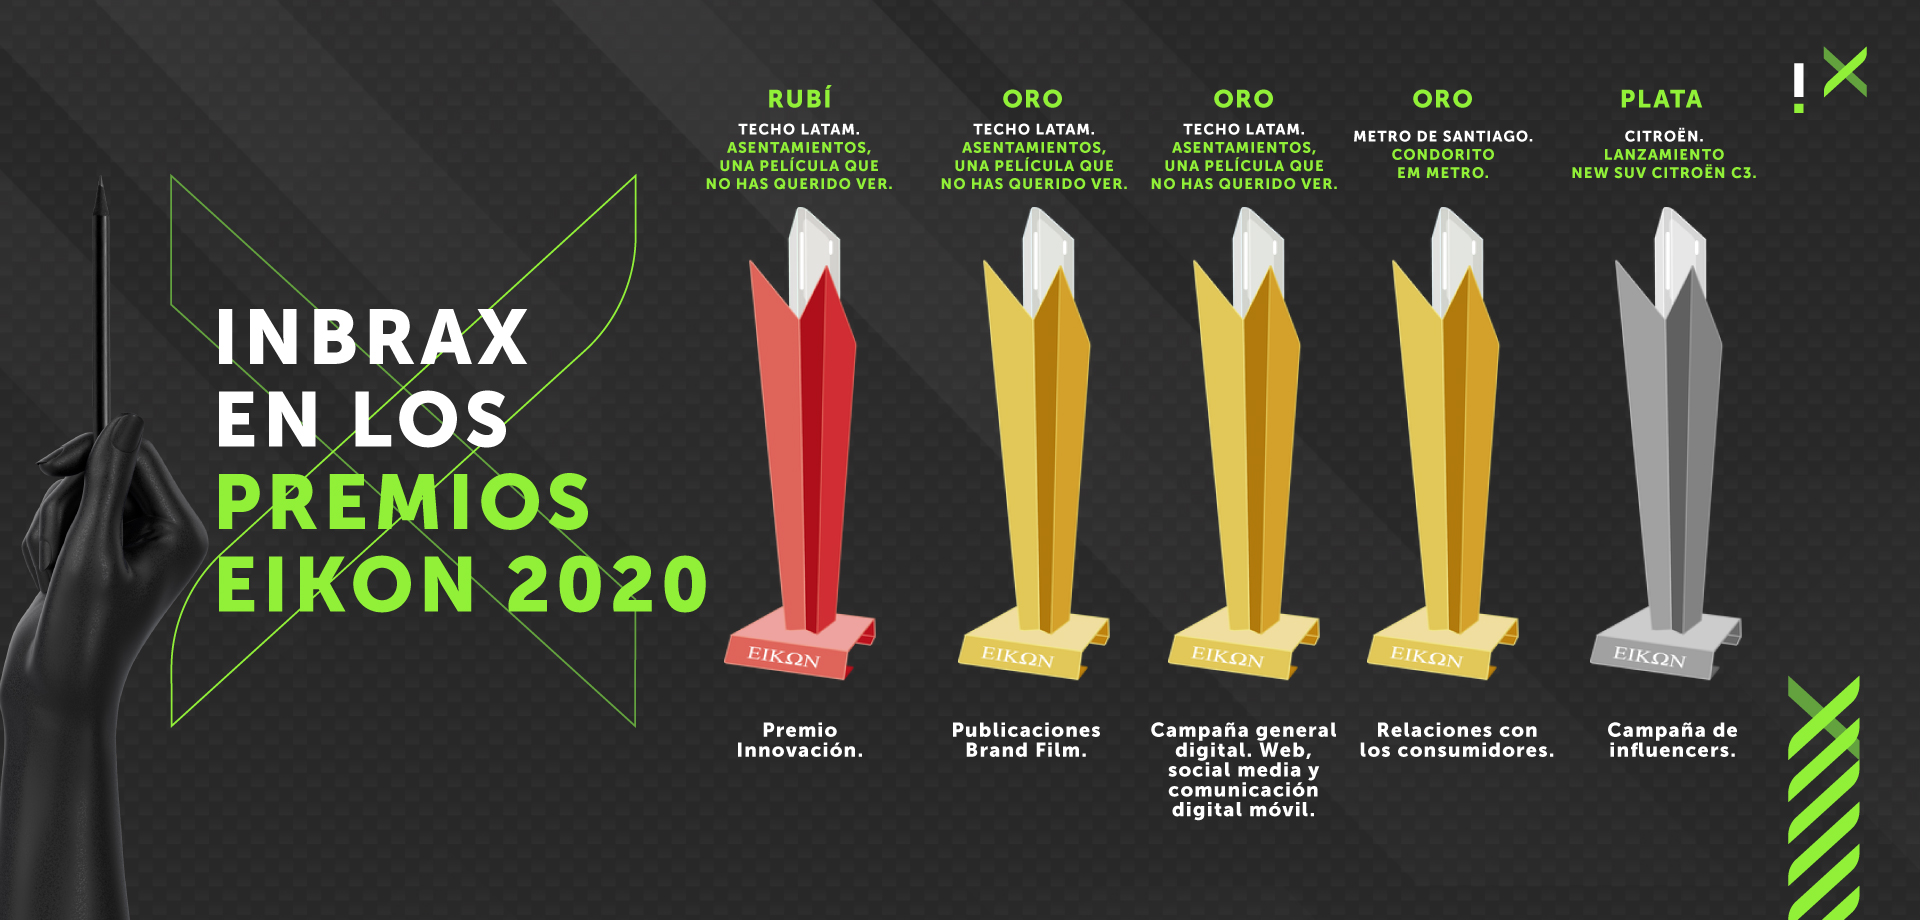 Inbrax es la tercera empresa más premiada en los premios Eikon 2020